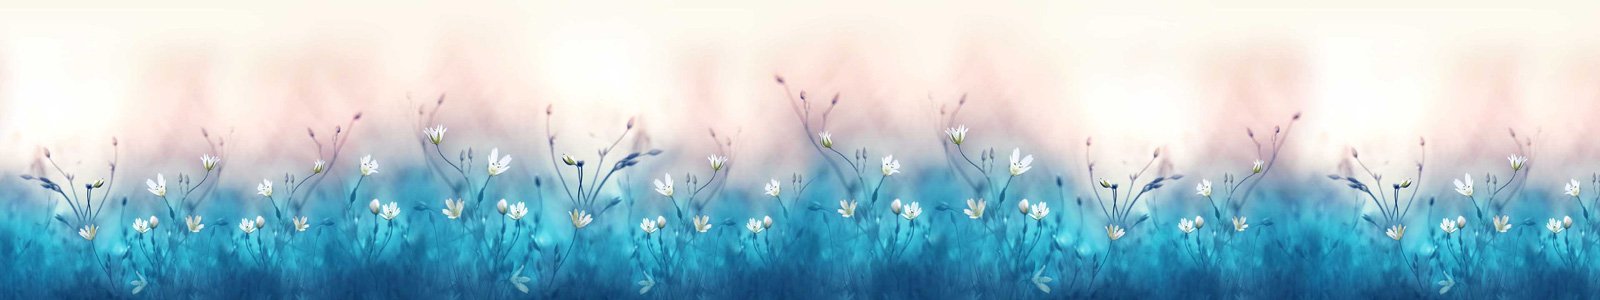 №7246 - Сказочные полевые цветы